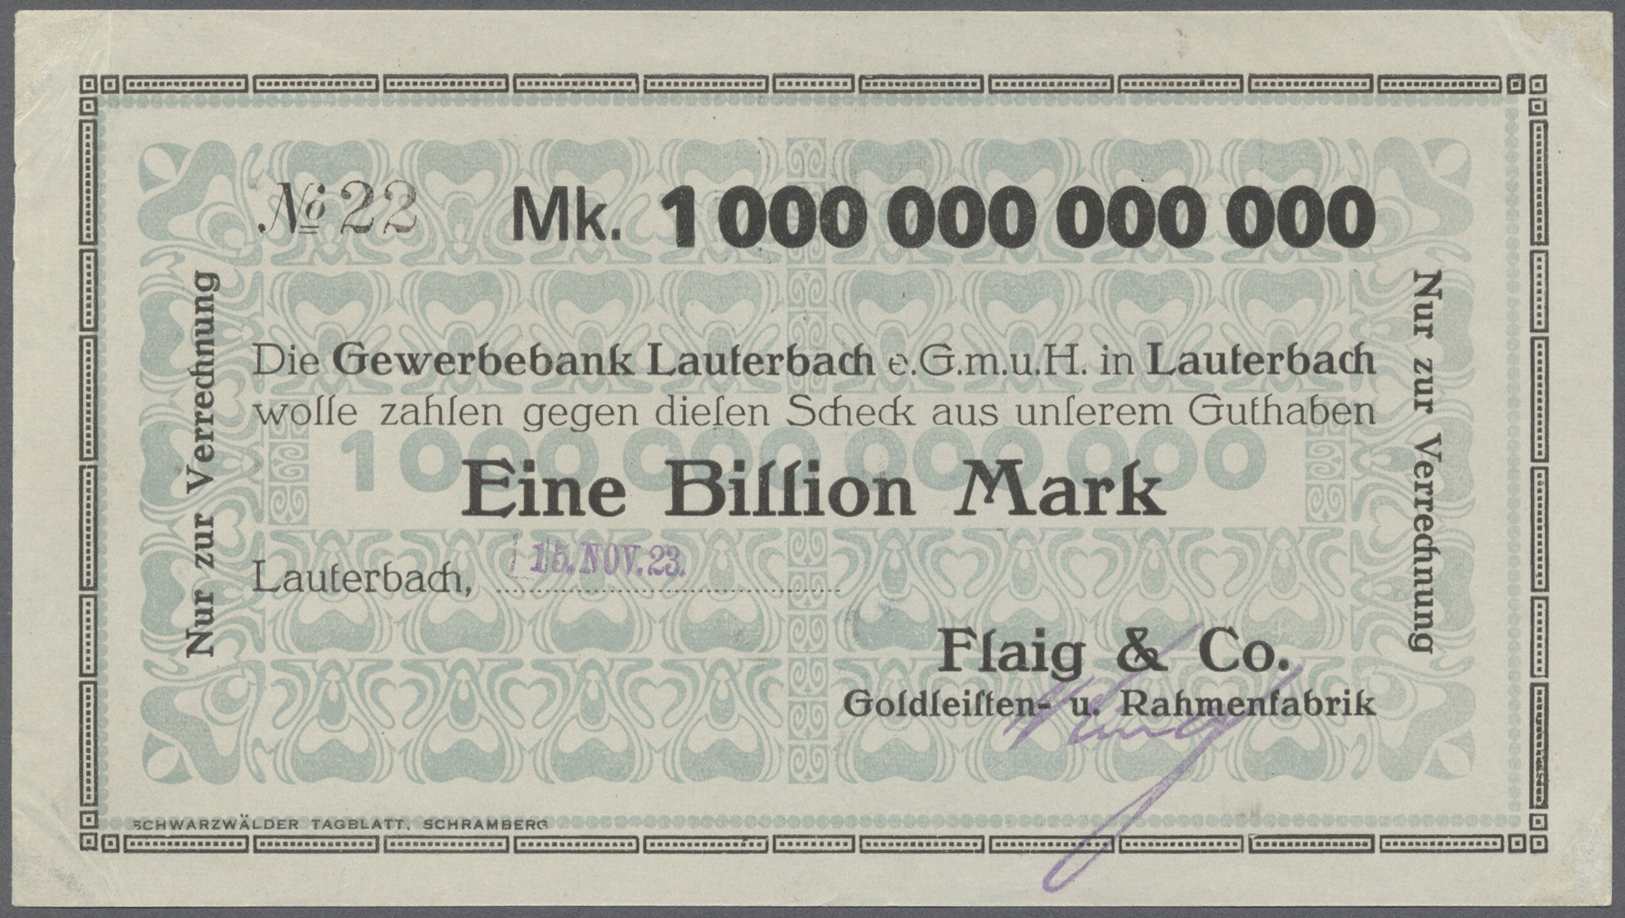 04303 Deutschland - Notgeld - Württemberg: Lauterbach, Flaig & Co., 1 Billion Mark, 15.11.1923, Erh. I-II - [11] Emissions Locales